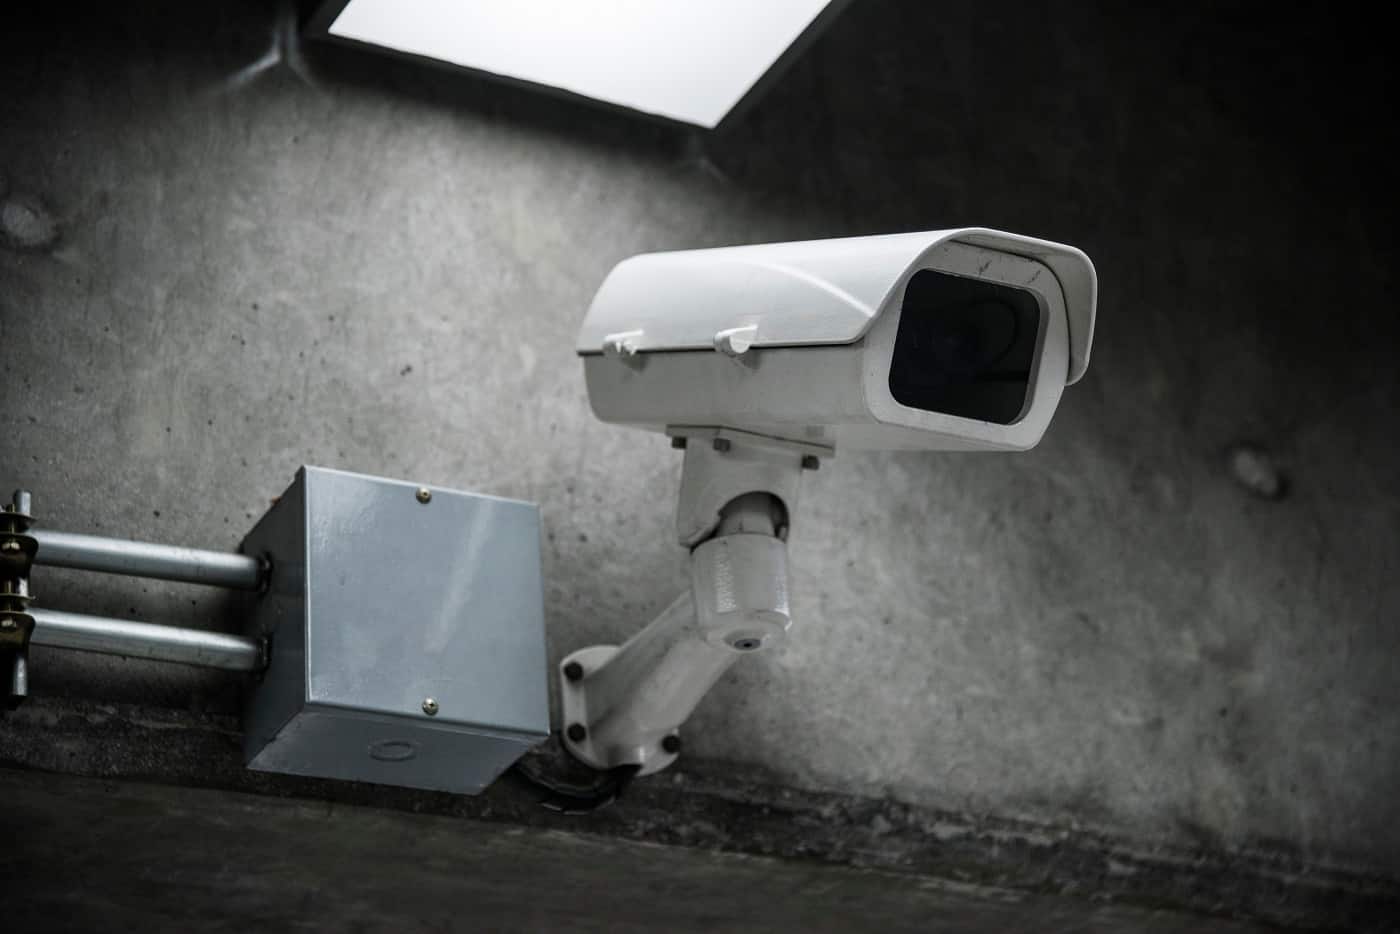 Es legal poner cámaras de vigilancia en la calle? Ayuda Ley Protección Datos